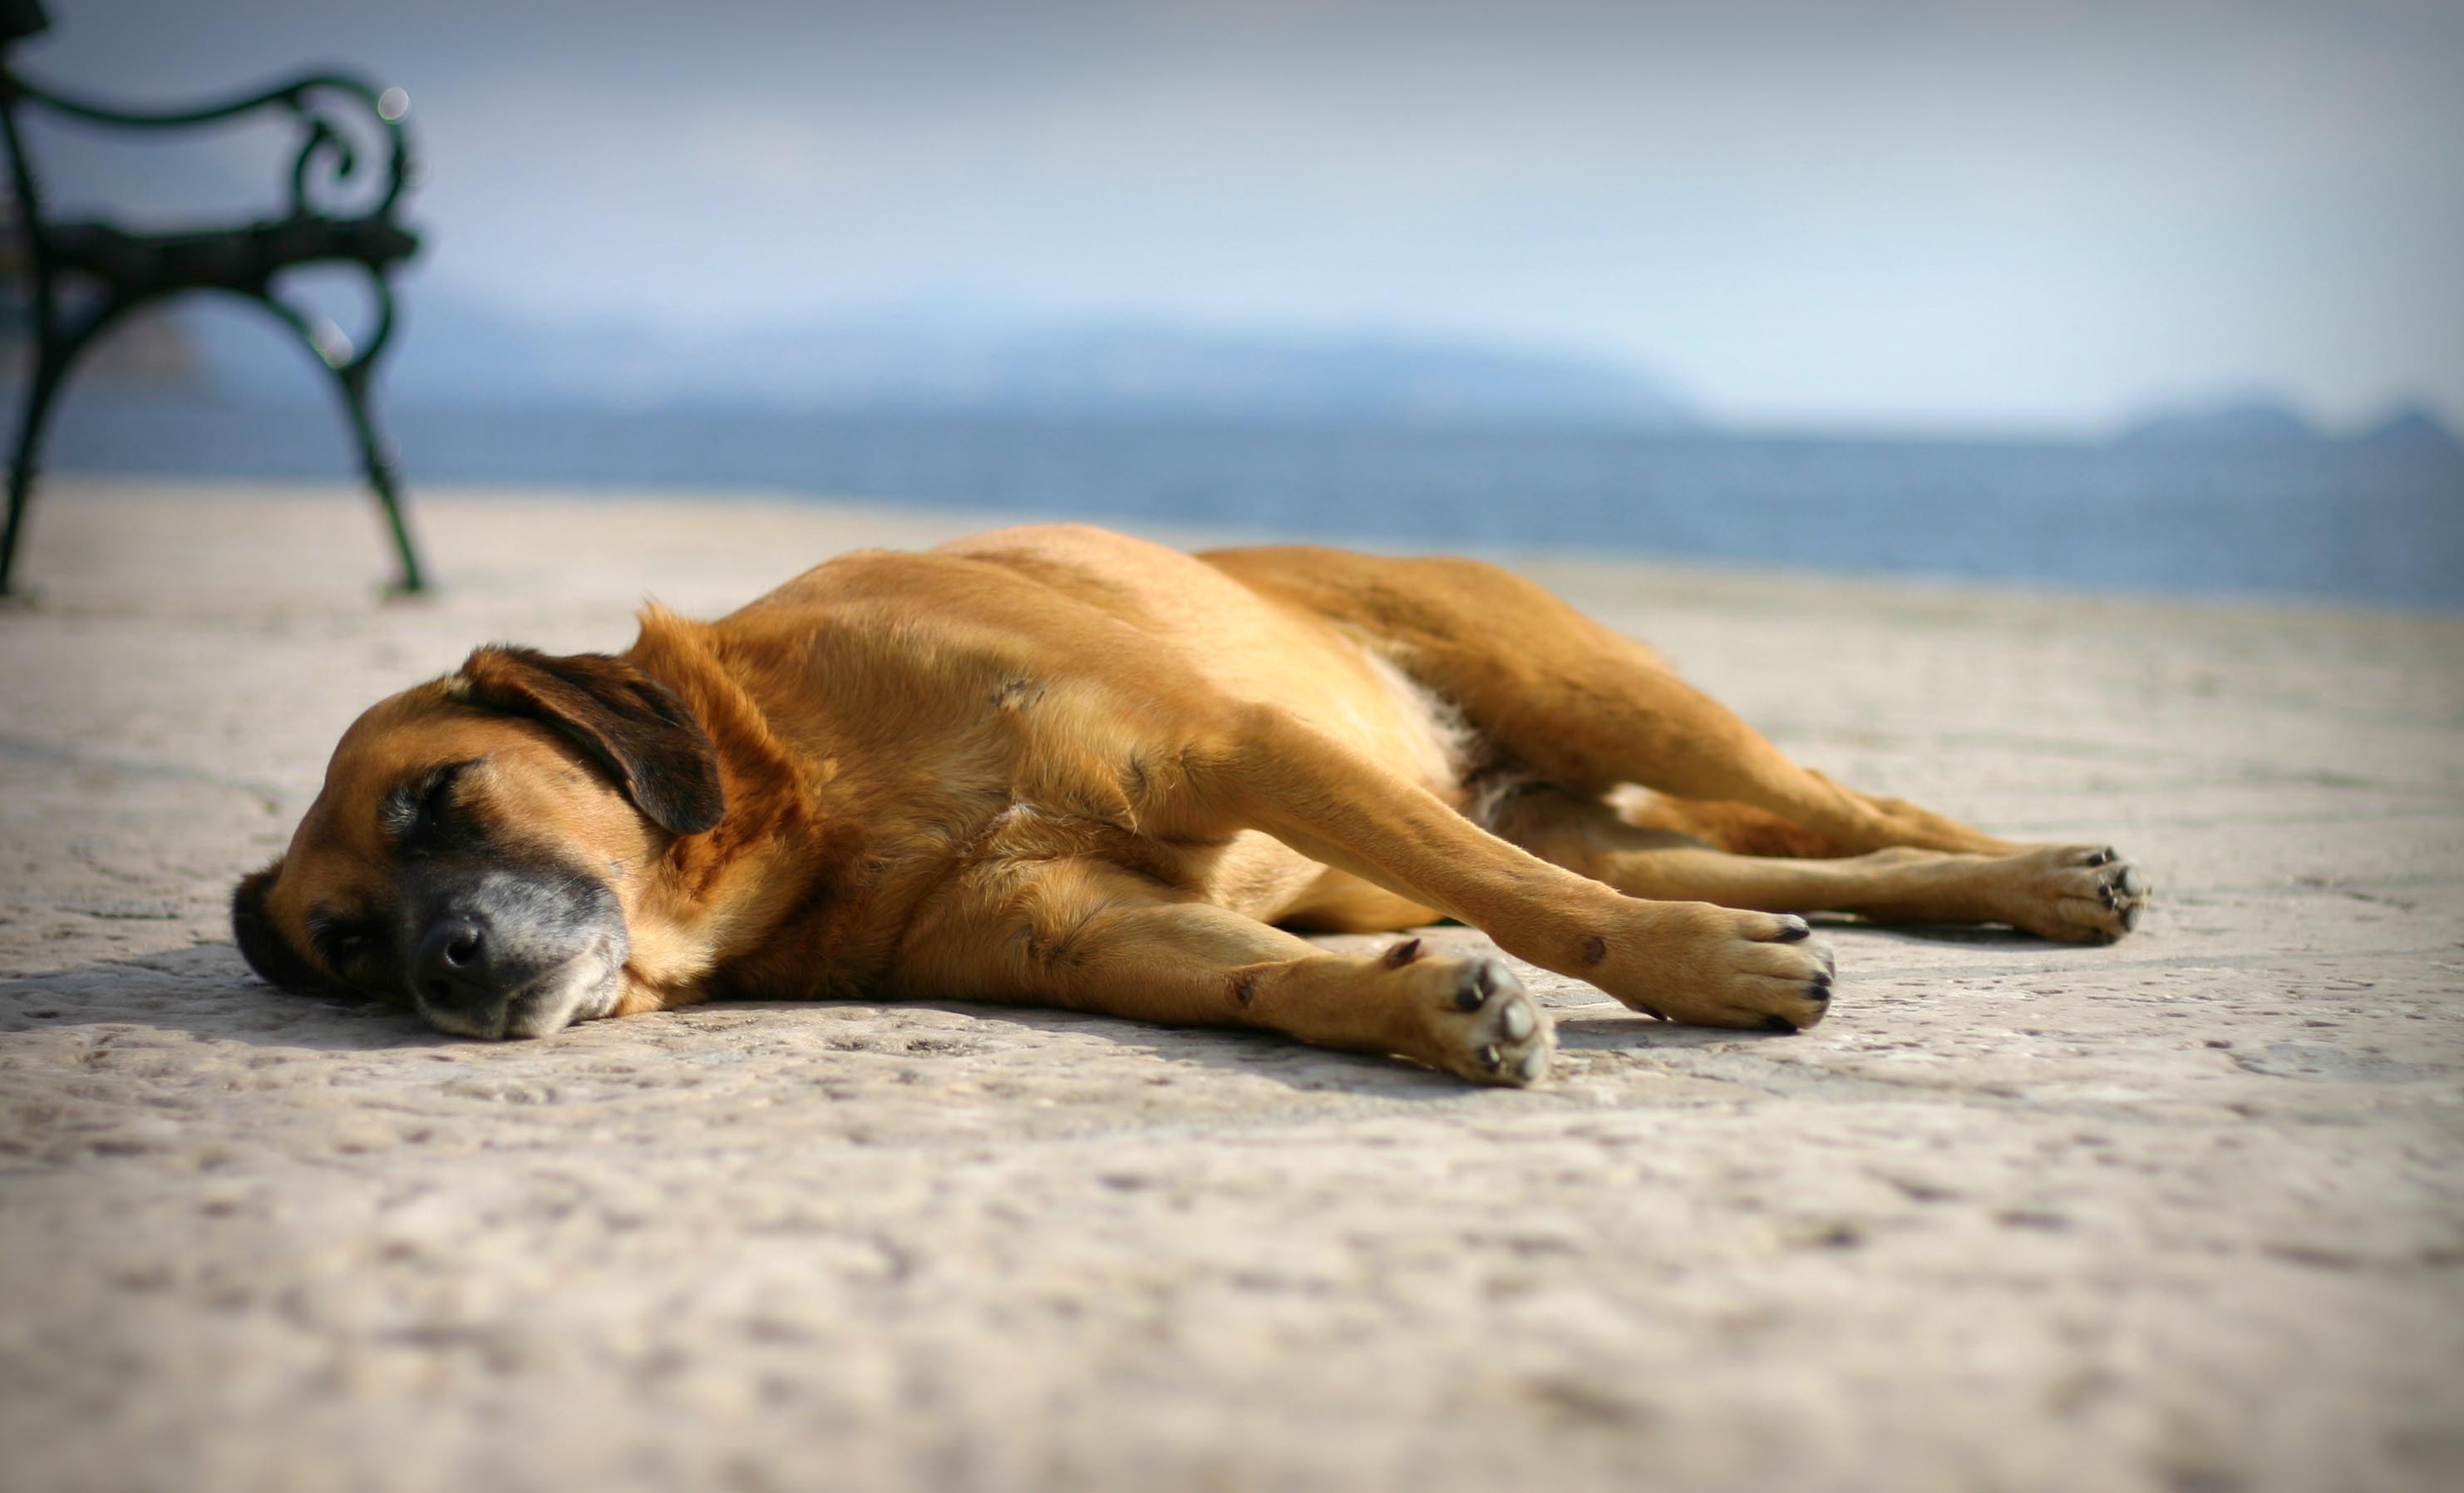 animals, sand, to lie down, lie, dog, sleep, dream